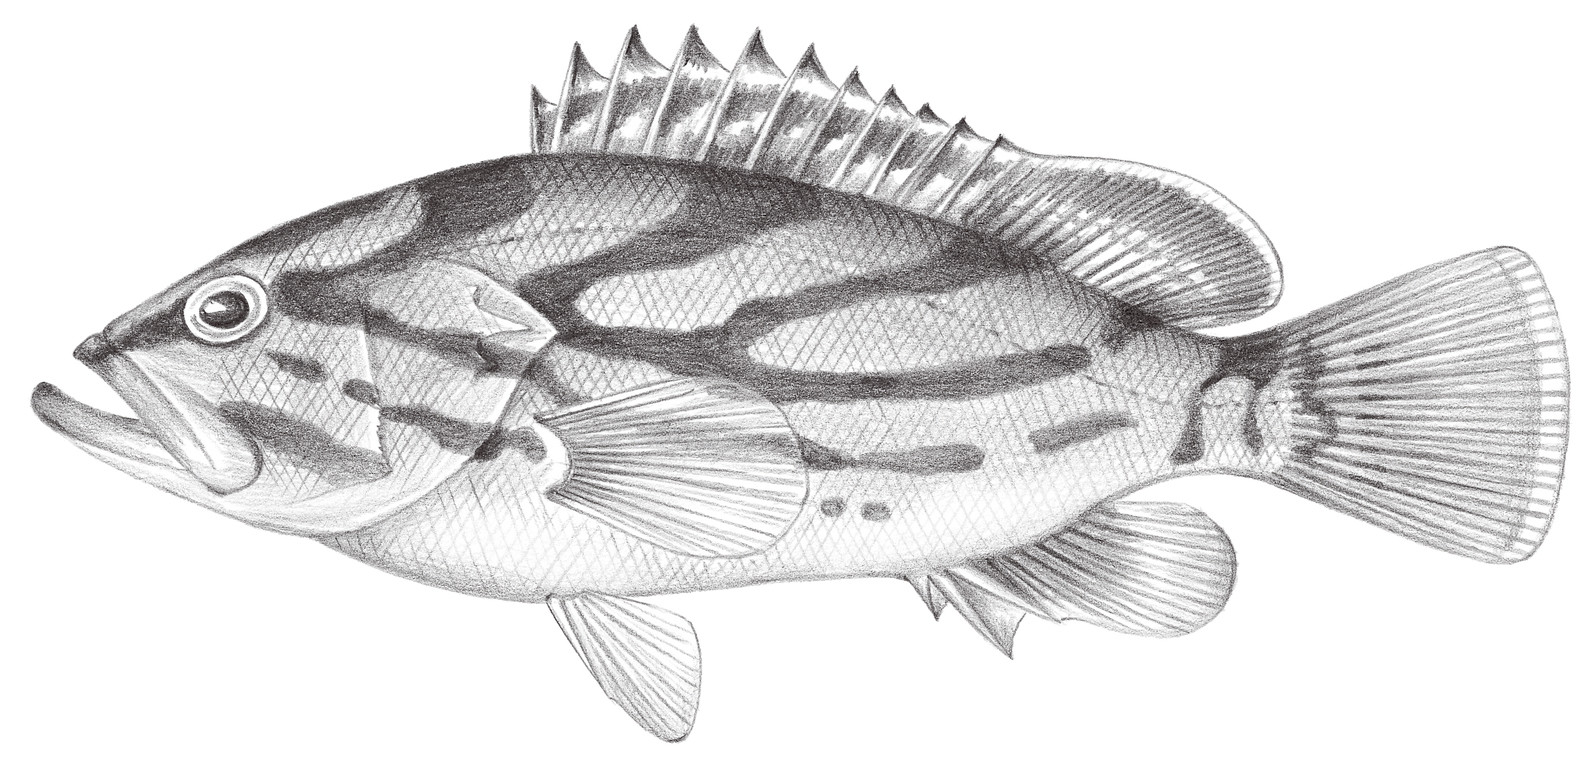 1036.	弓斑石斑魚 Epinephelus morrhua (Valenciennes, 1833)